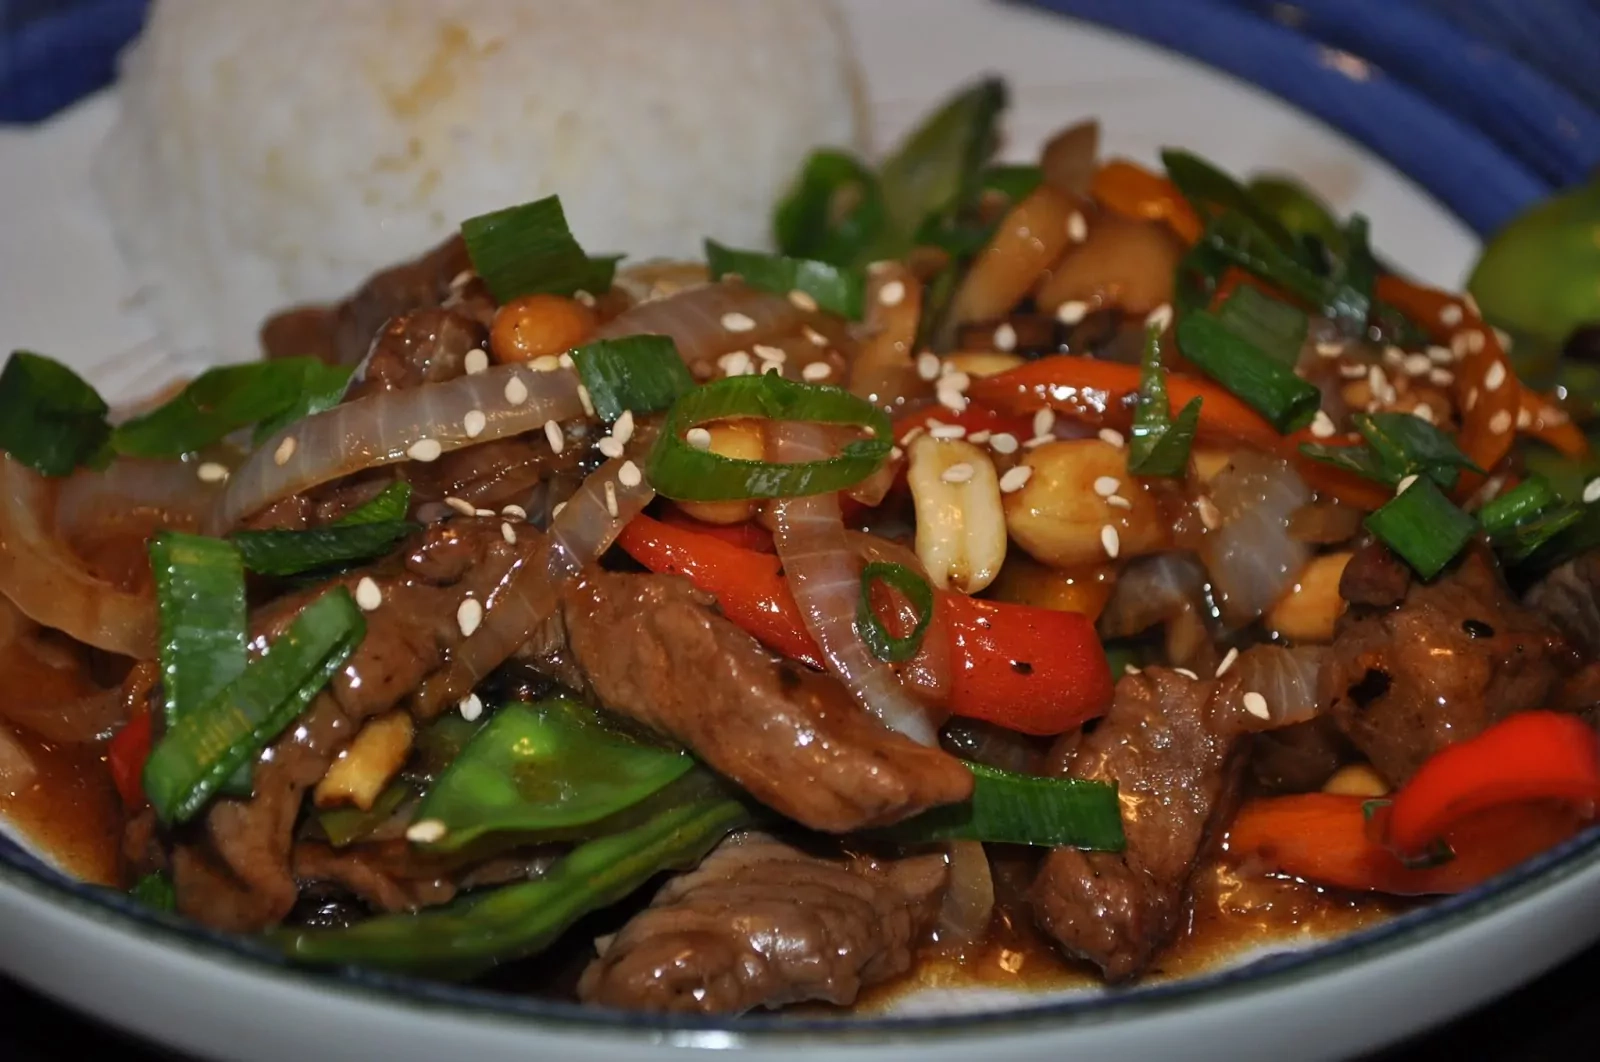 Carne en chino: Salteado de carne y verduras con salsa teriyaki | Receta